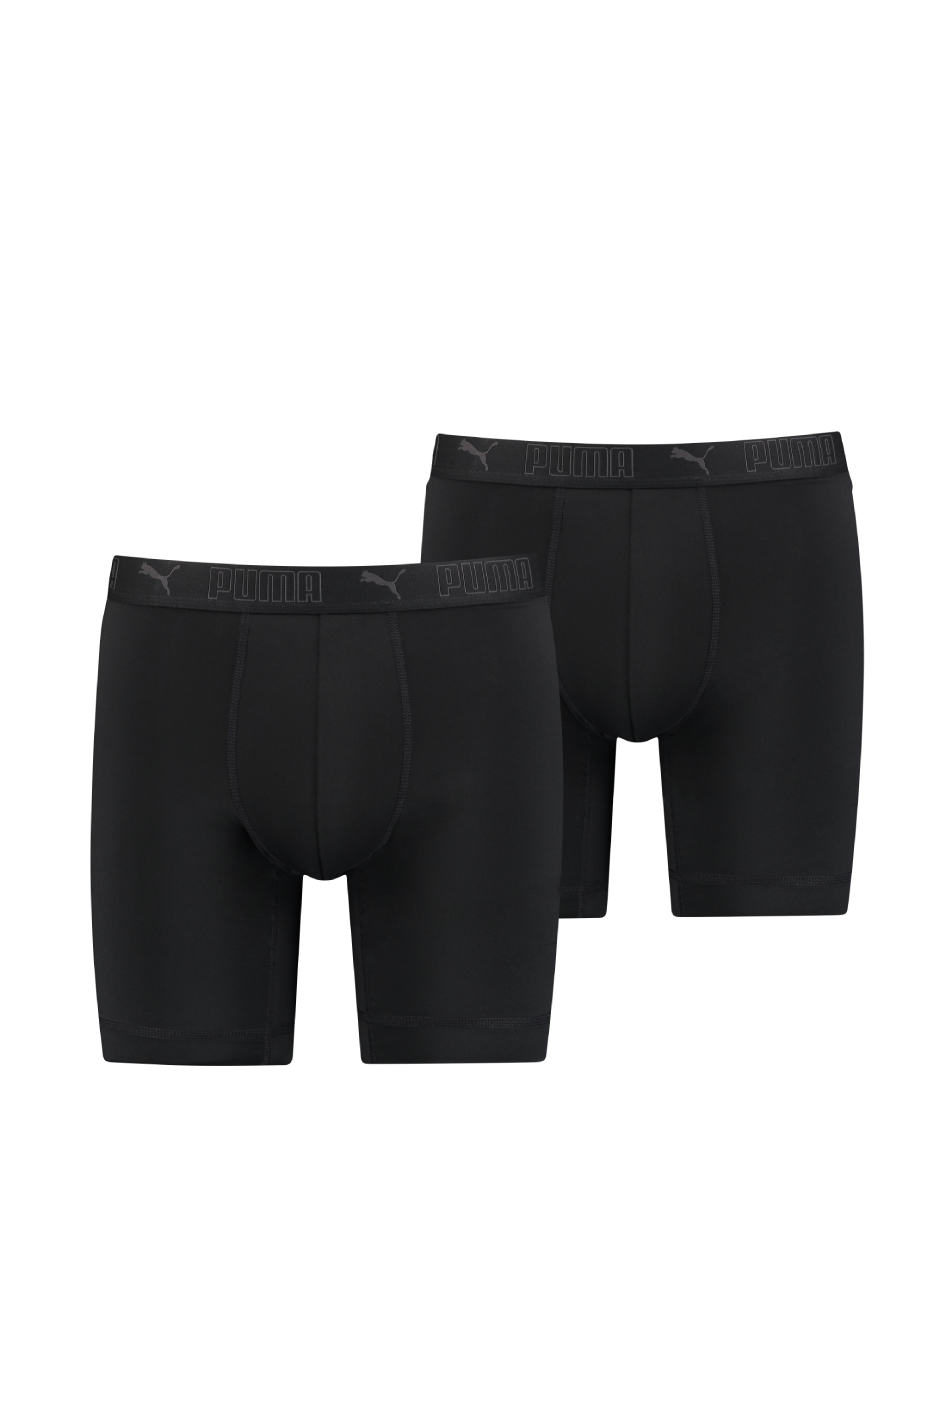 Puma Sport 2 Pack Men's Microfiber Long Boxer — Pants & Socks